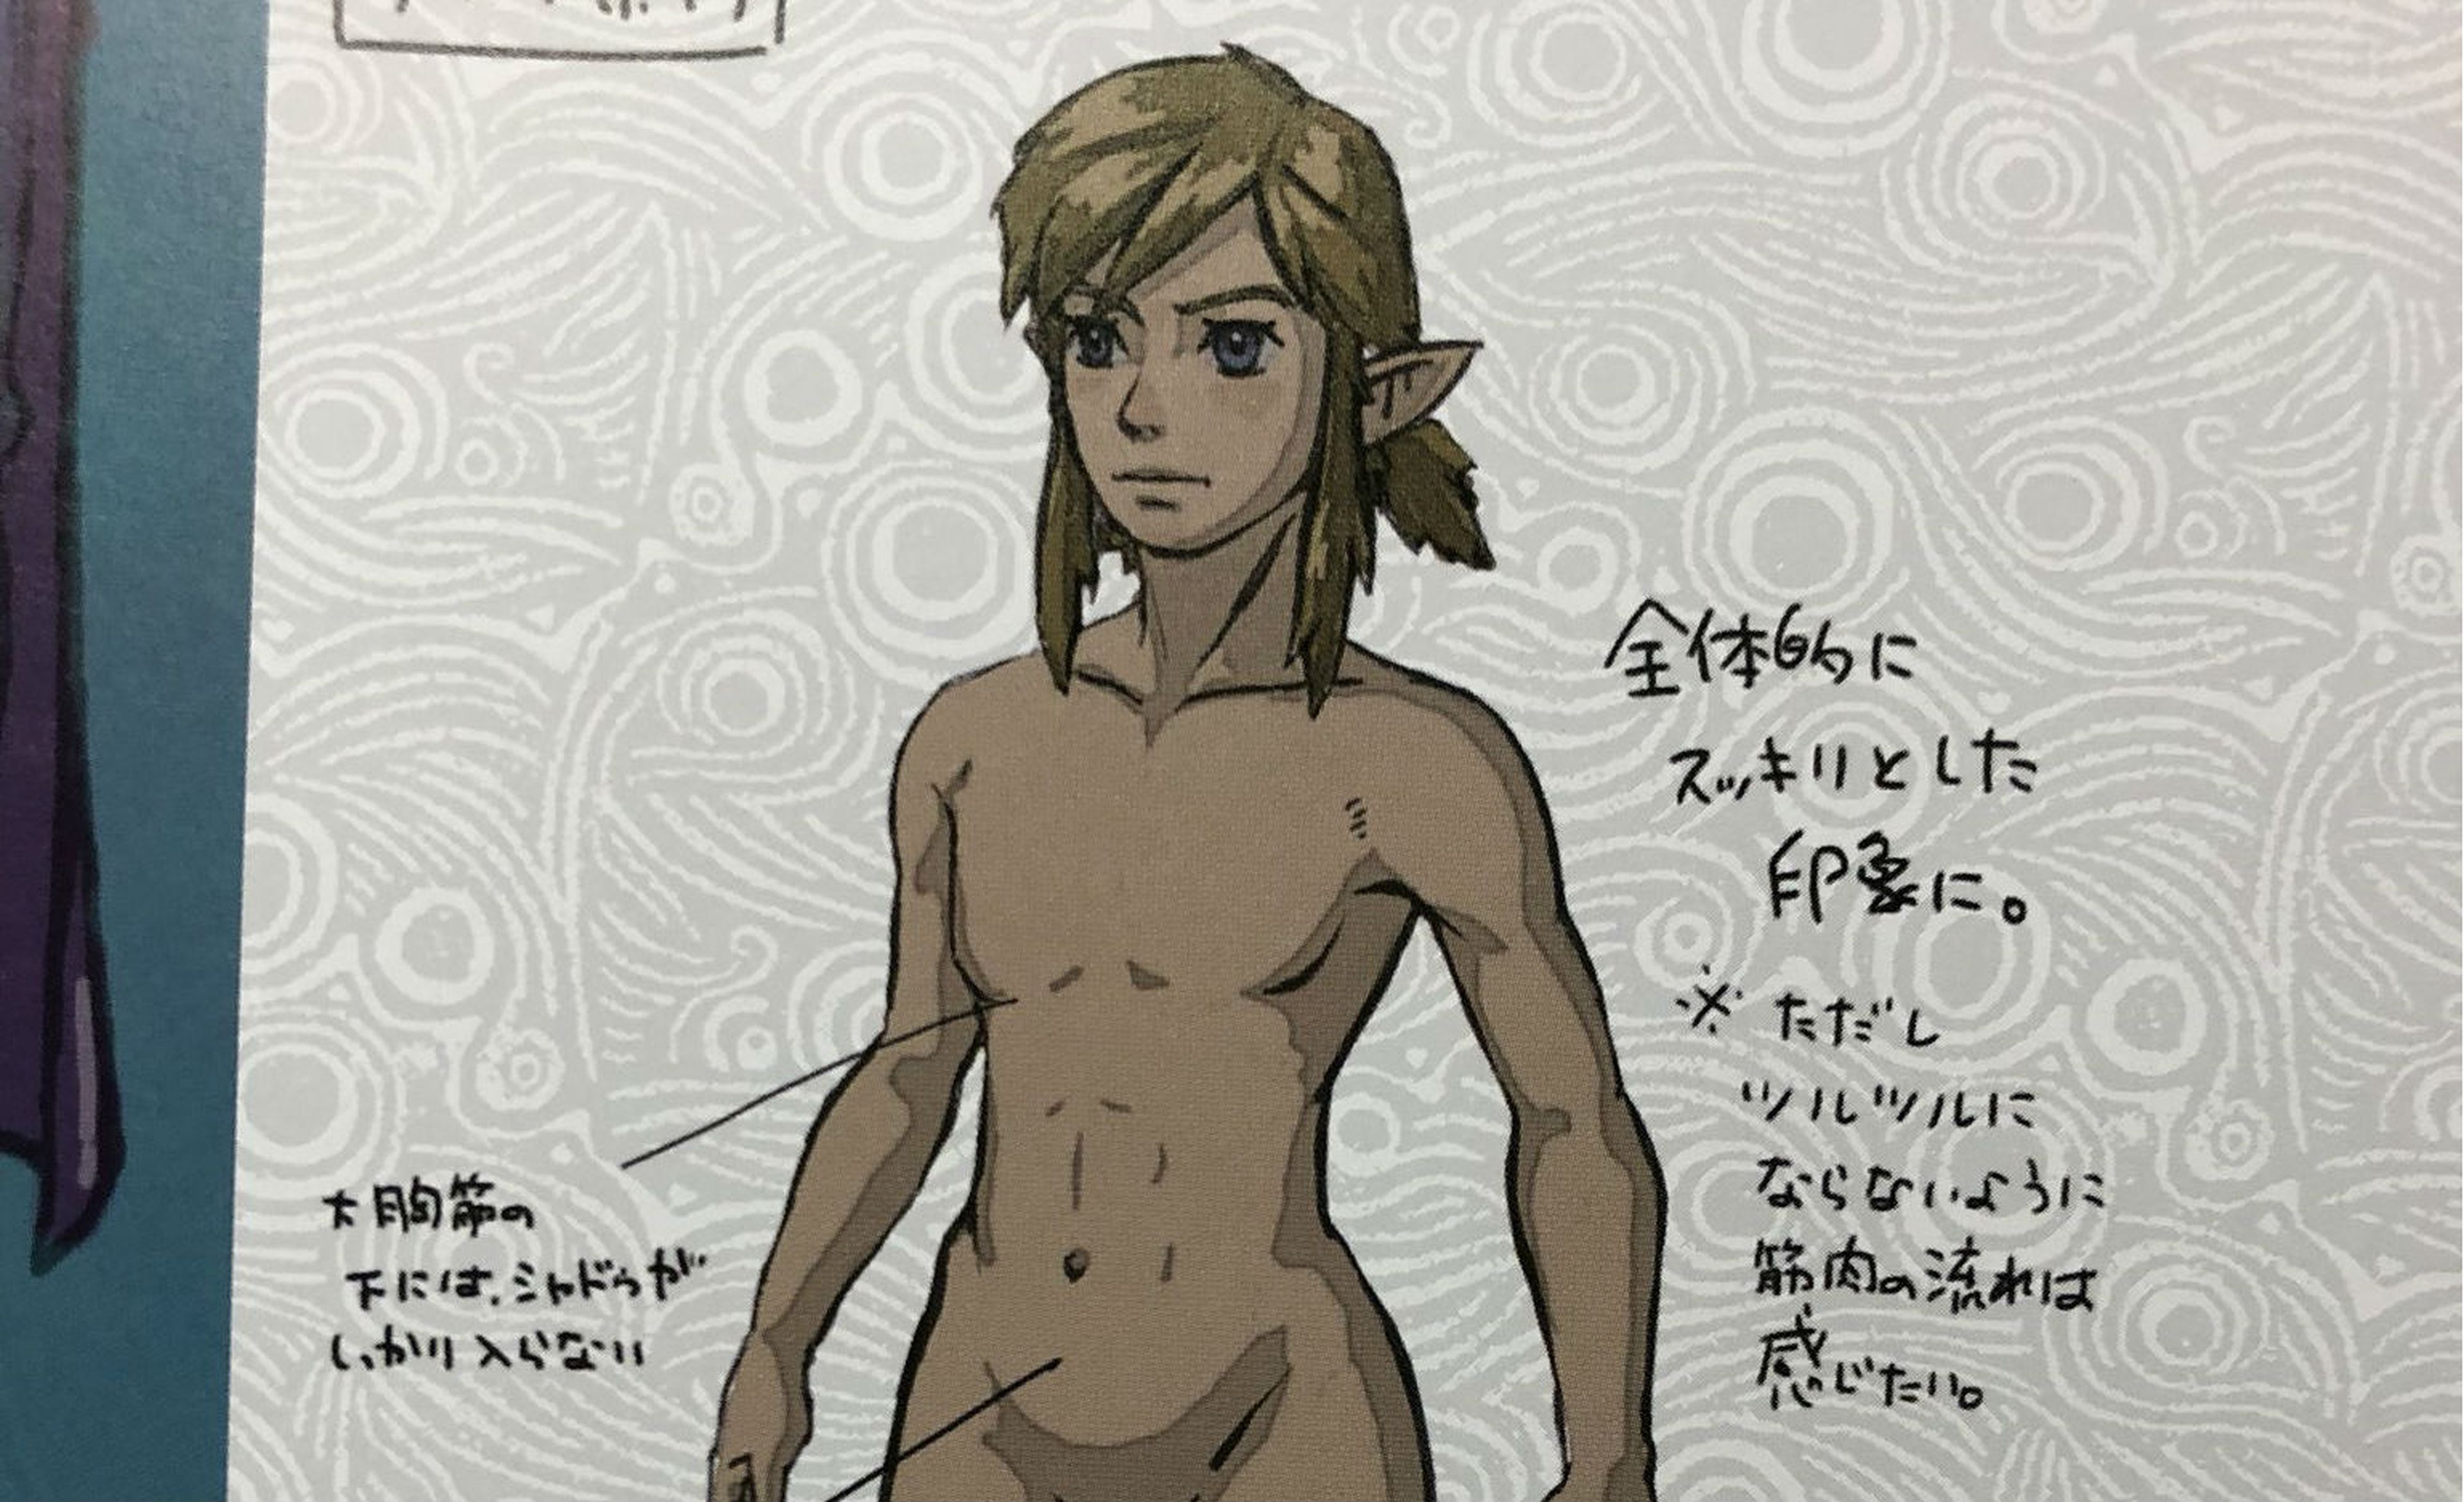 Link desnudo en el libro de arte oficial de Zelda Breath of the Wild